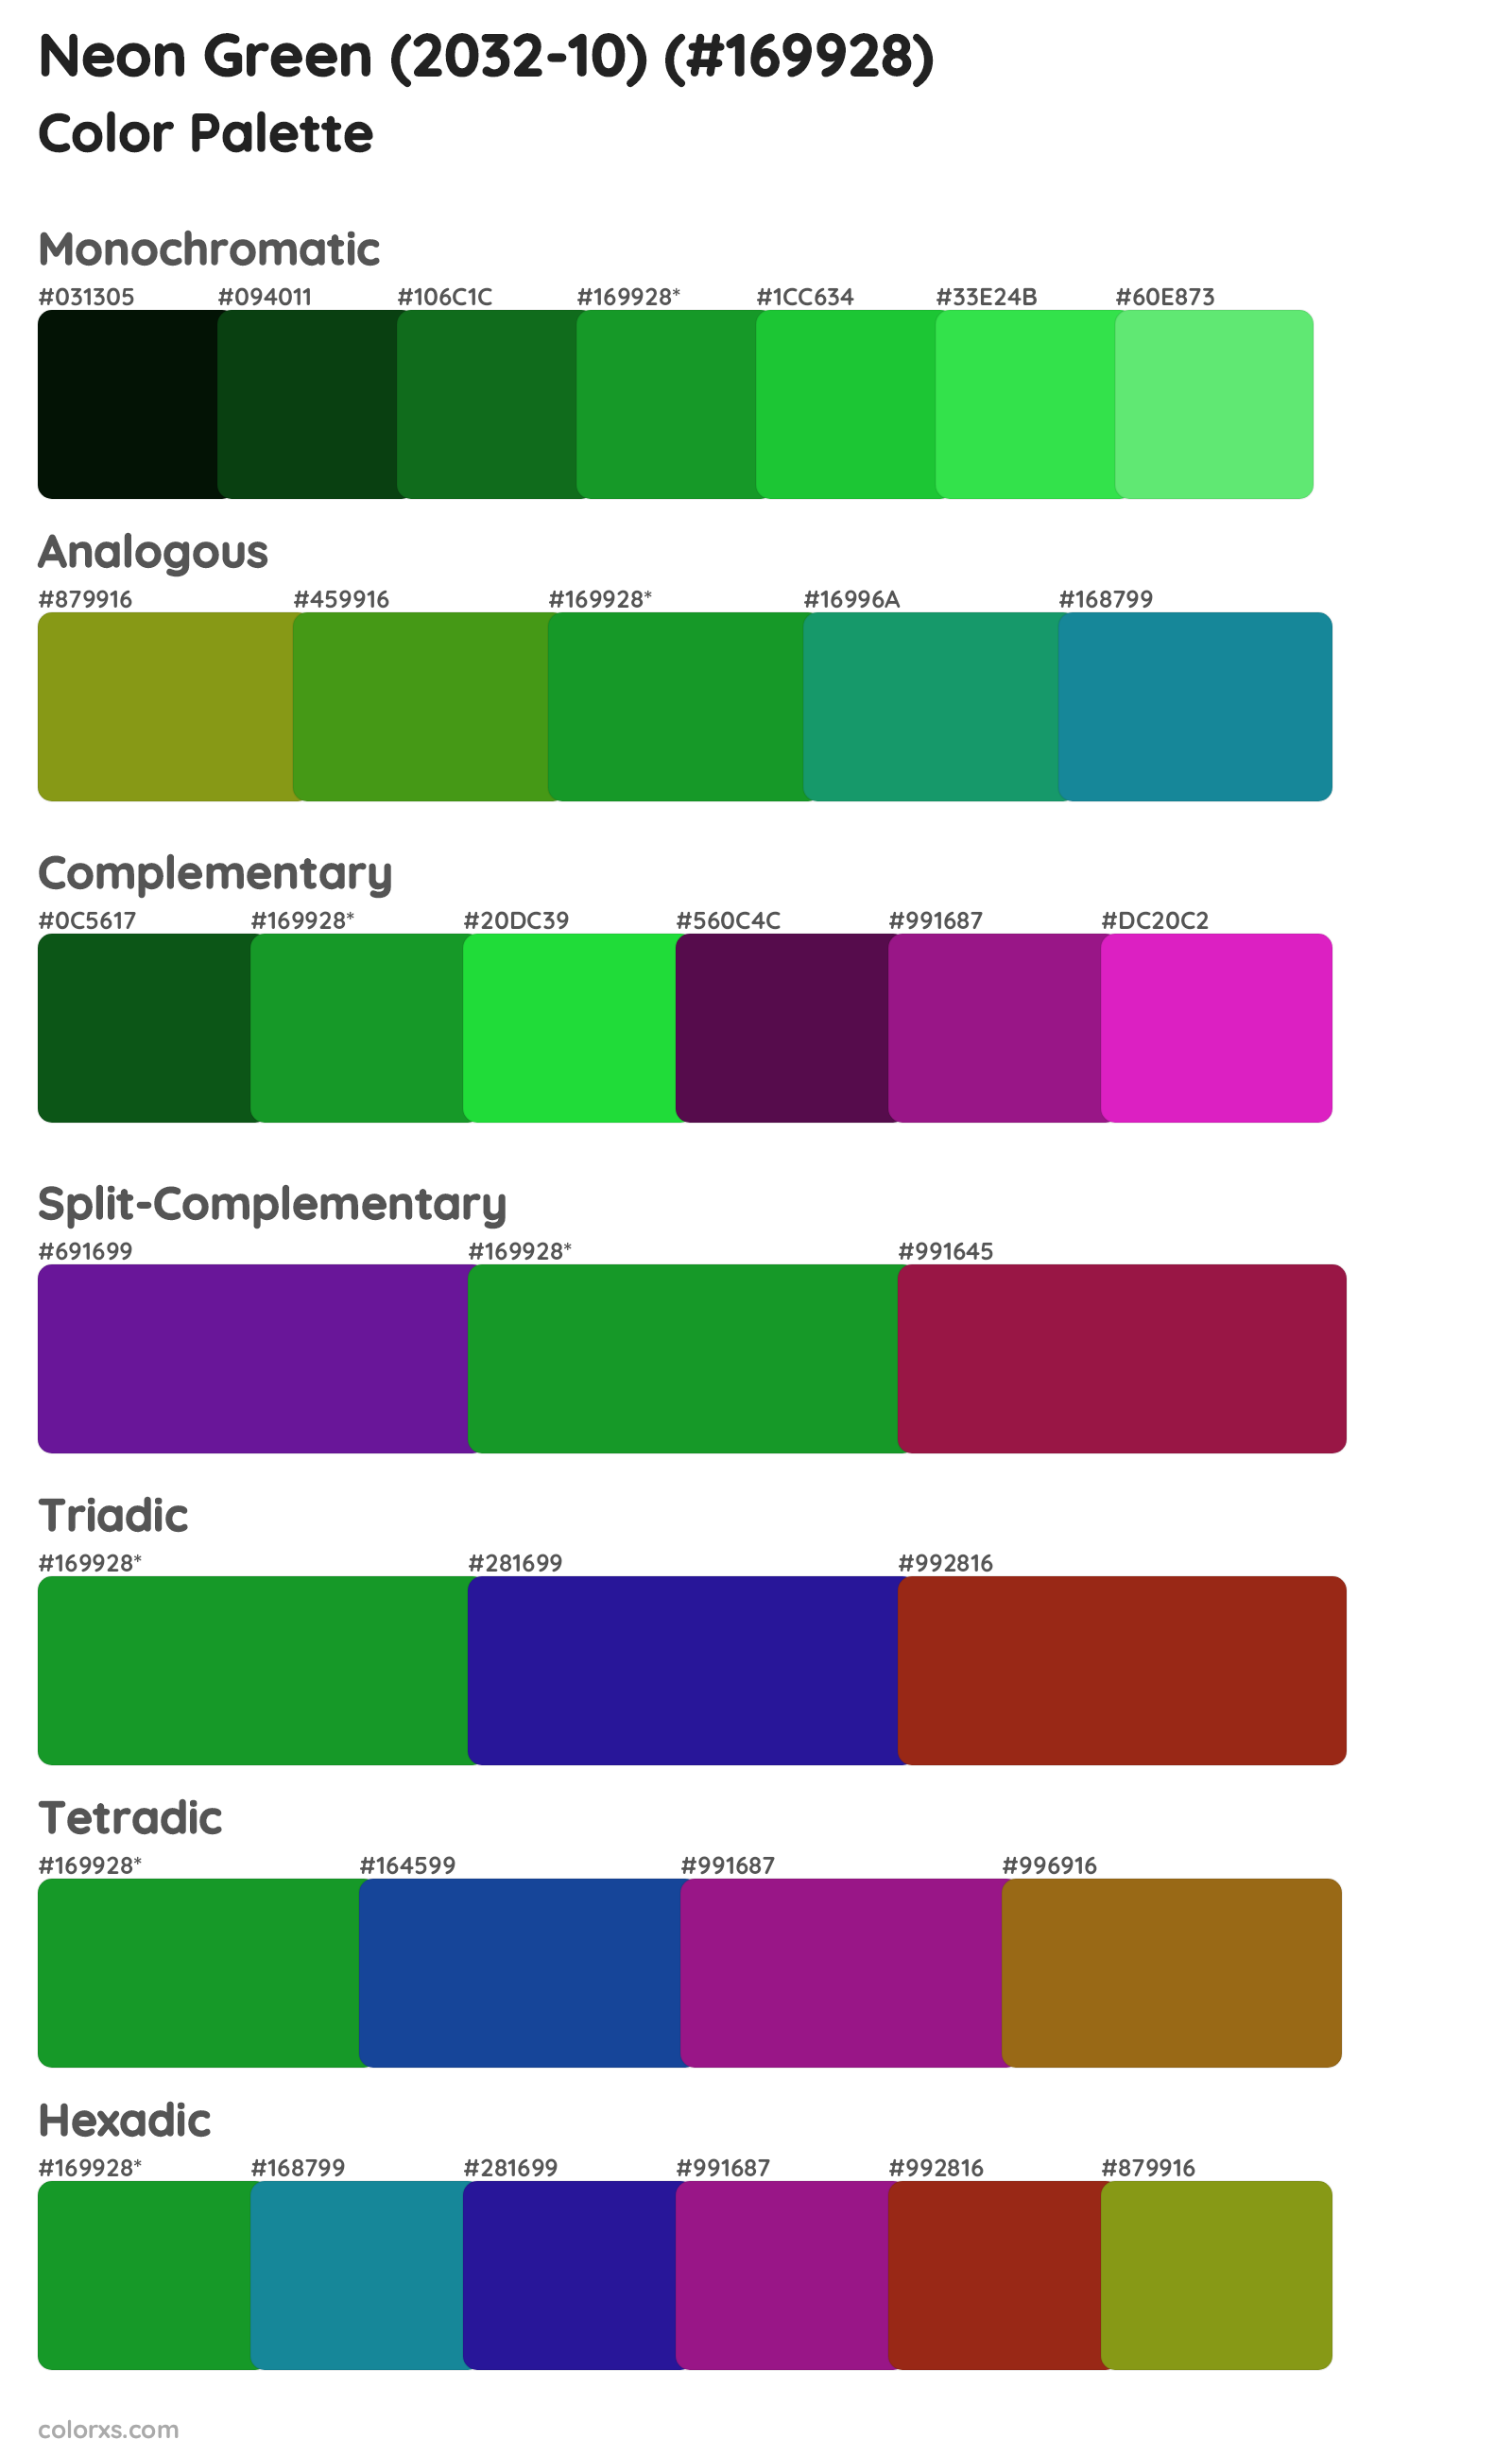 Neon Green (2032-10) Color Scheme Palettes